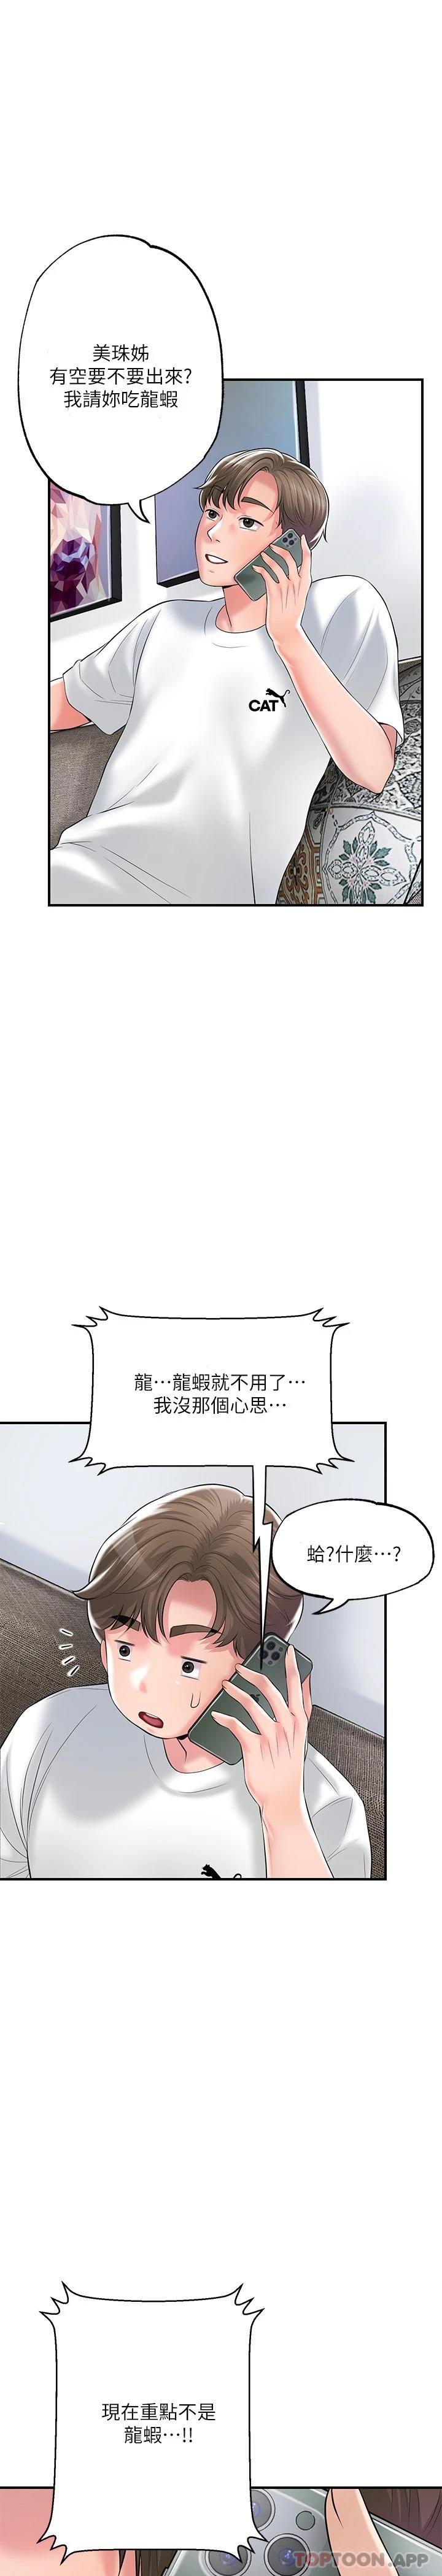 韩国污漫画 幸福督市 第75话 - 爆乳女仆 22